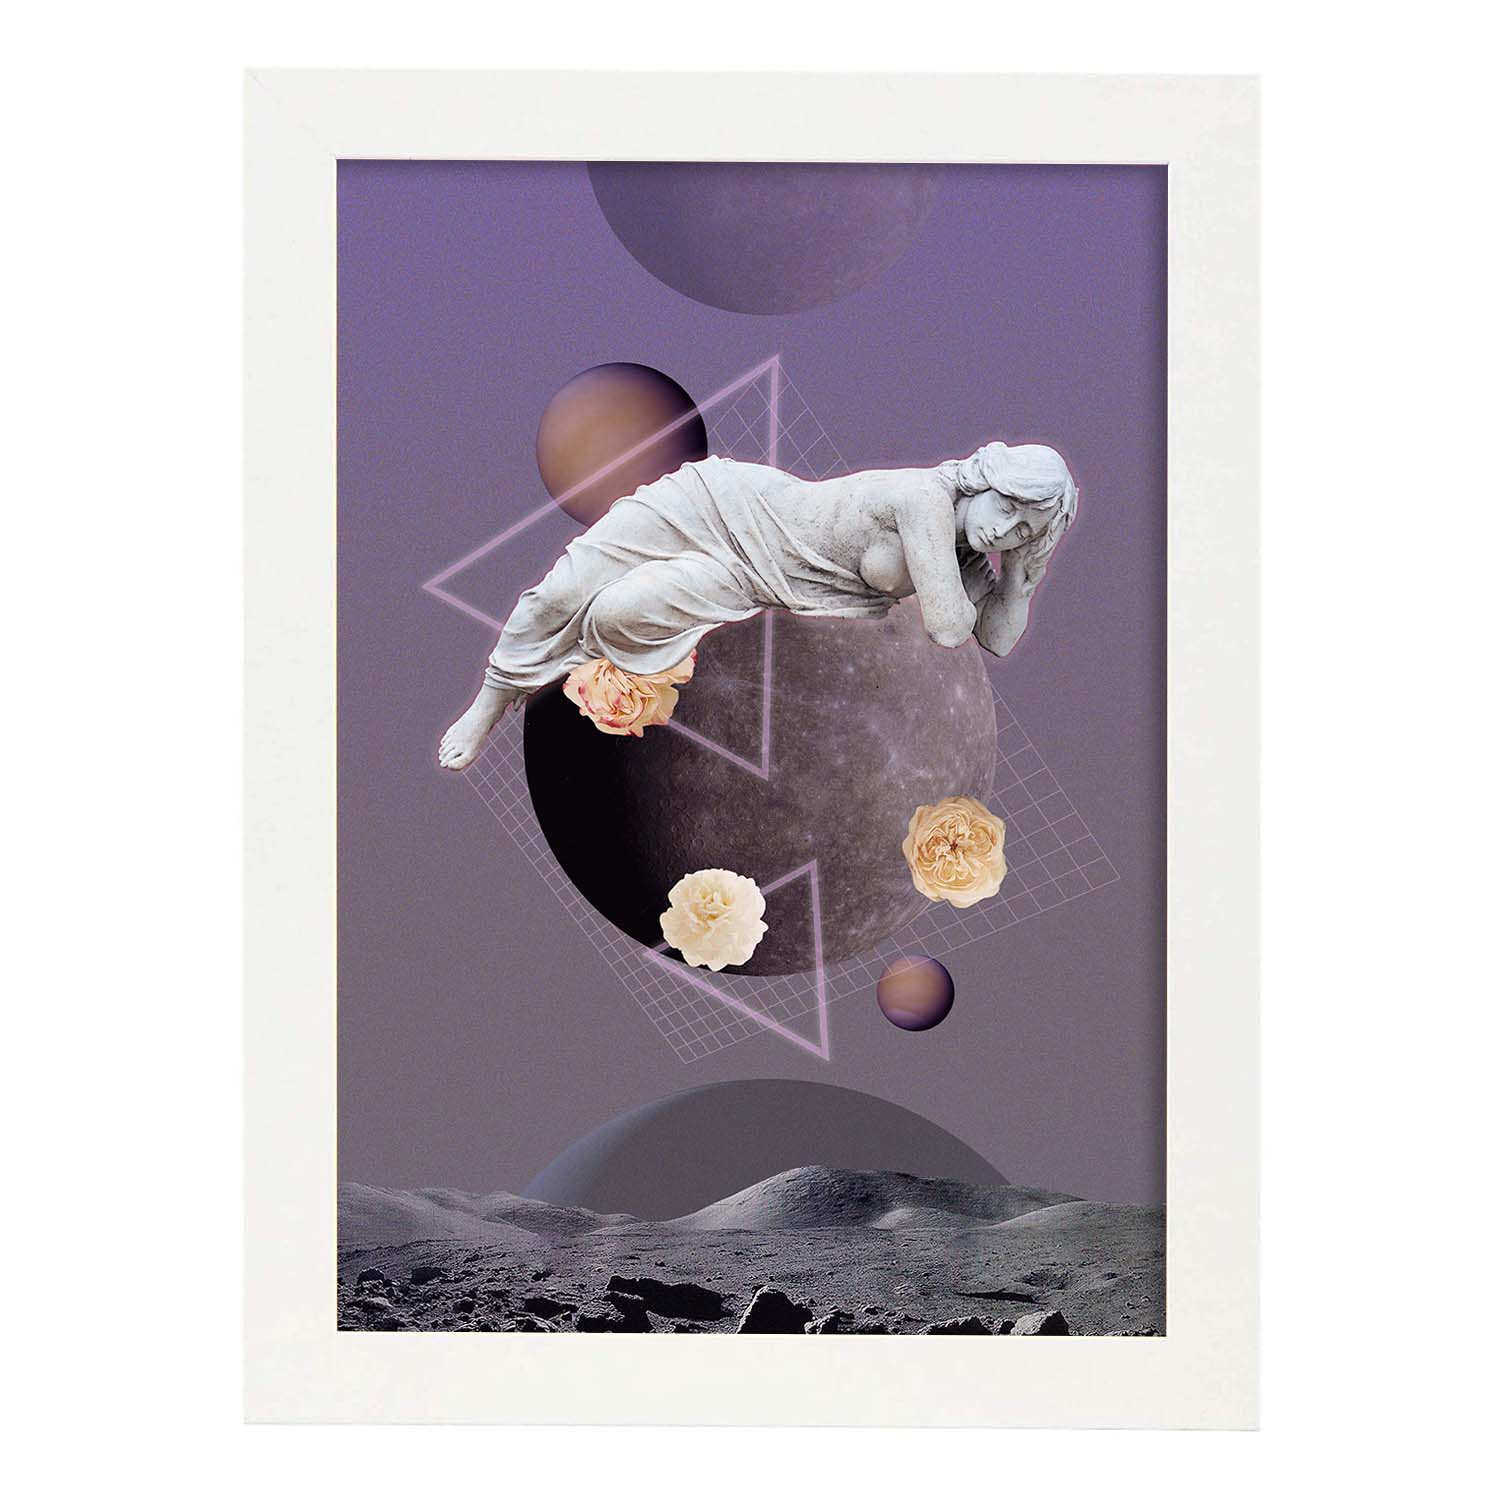 Lamina artistica decorativa con ilustración de Collage surrealista 27 estilo Collage-Artwork-Nacnic-A3-Marco Blanco-Nacnic Estudio SL